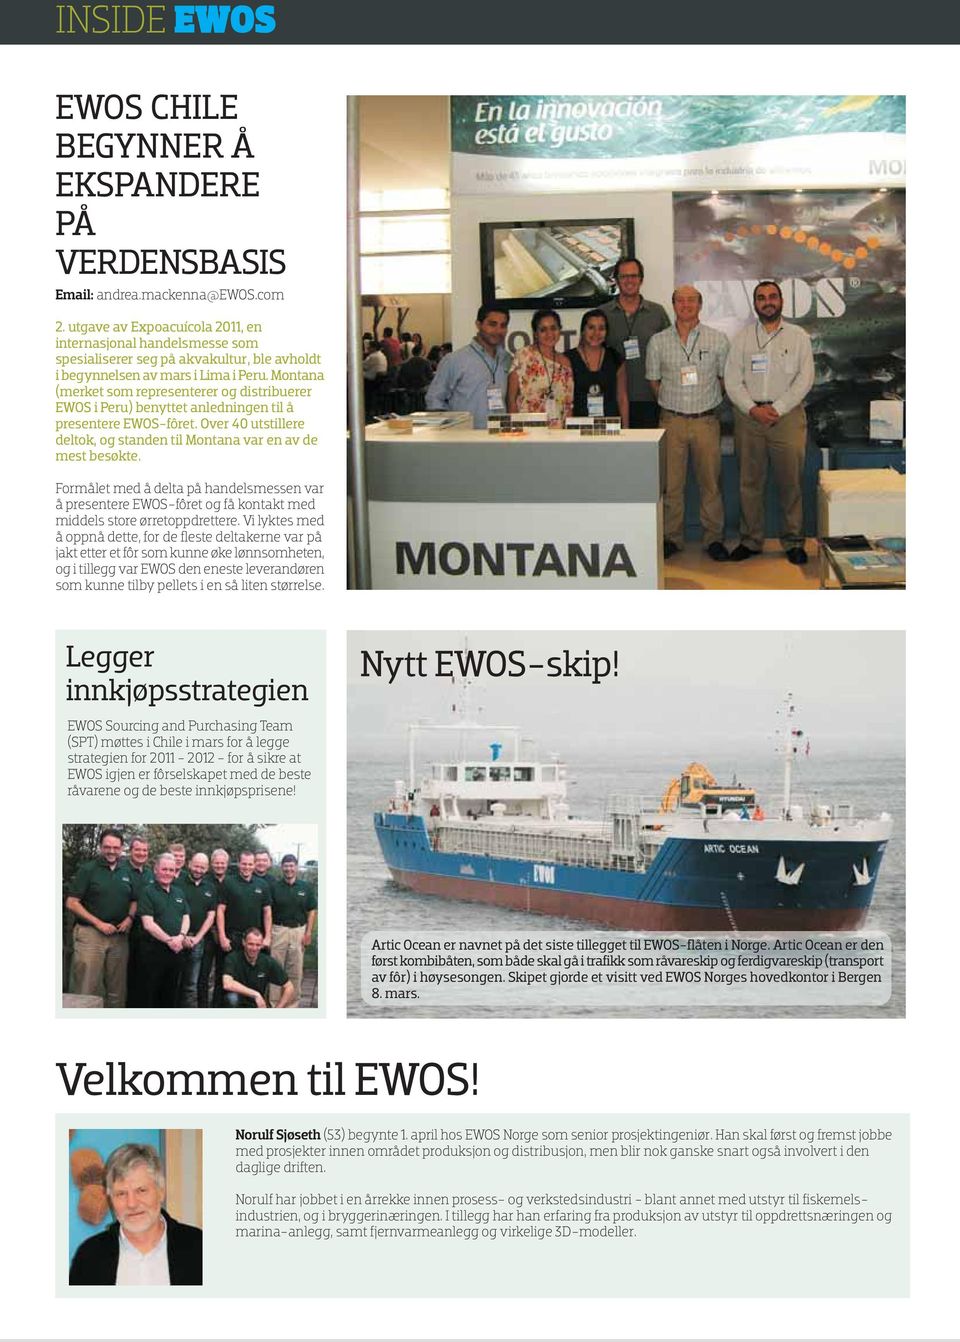 Montana (merket som representerer og distribuerer EWOS i Peru) benyttet anledningen til å presentere EWOS-fôret. Over 40 utstillere deltok, og standen til Montana var en av de mest besøkte.